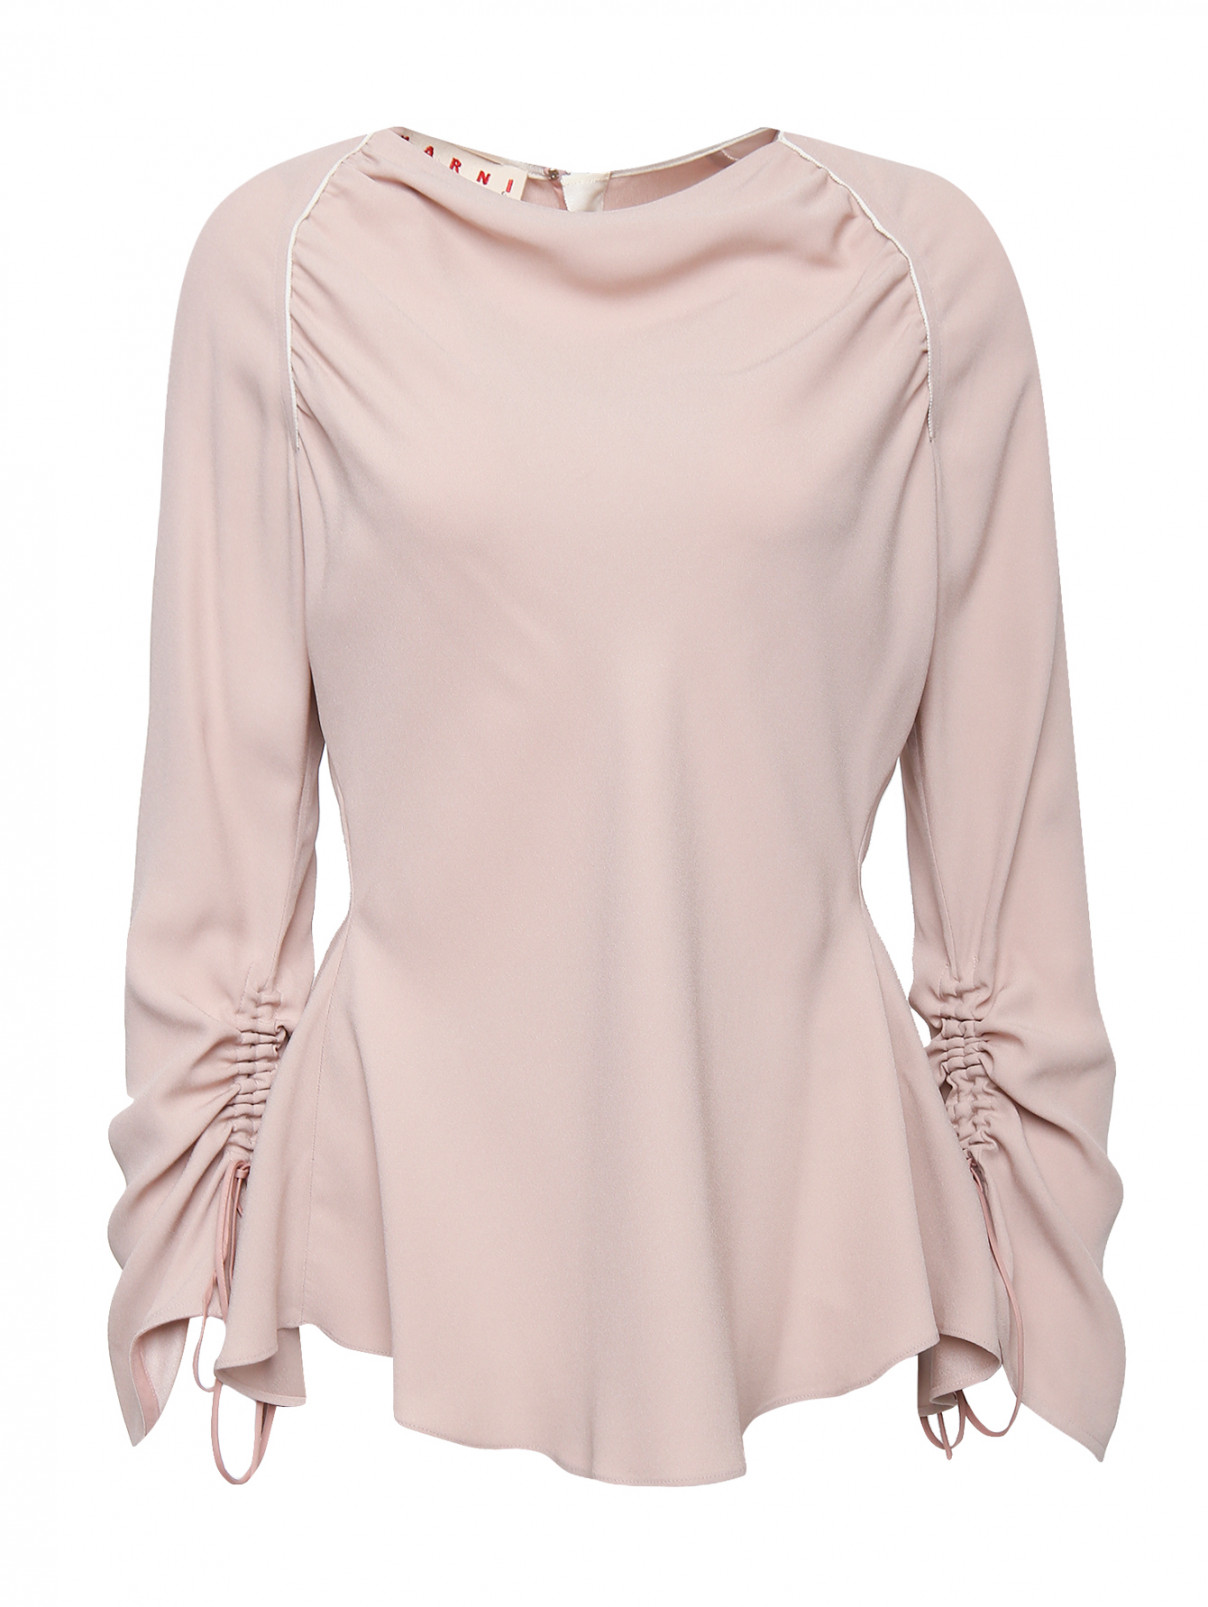 Блуза с драпировками Marni  –  Общий вид  – Цвет:  Розовый